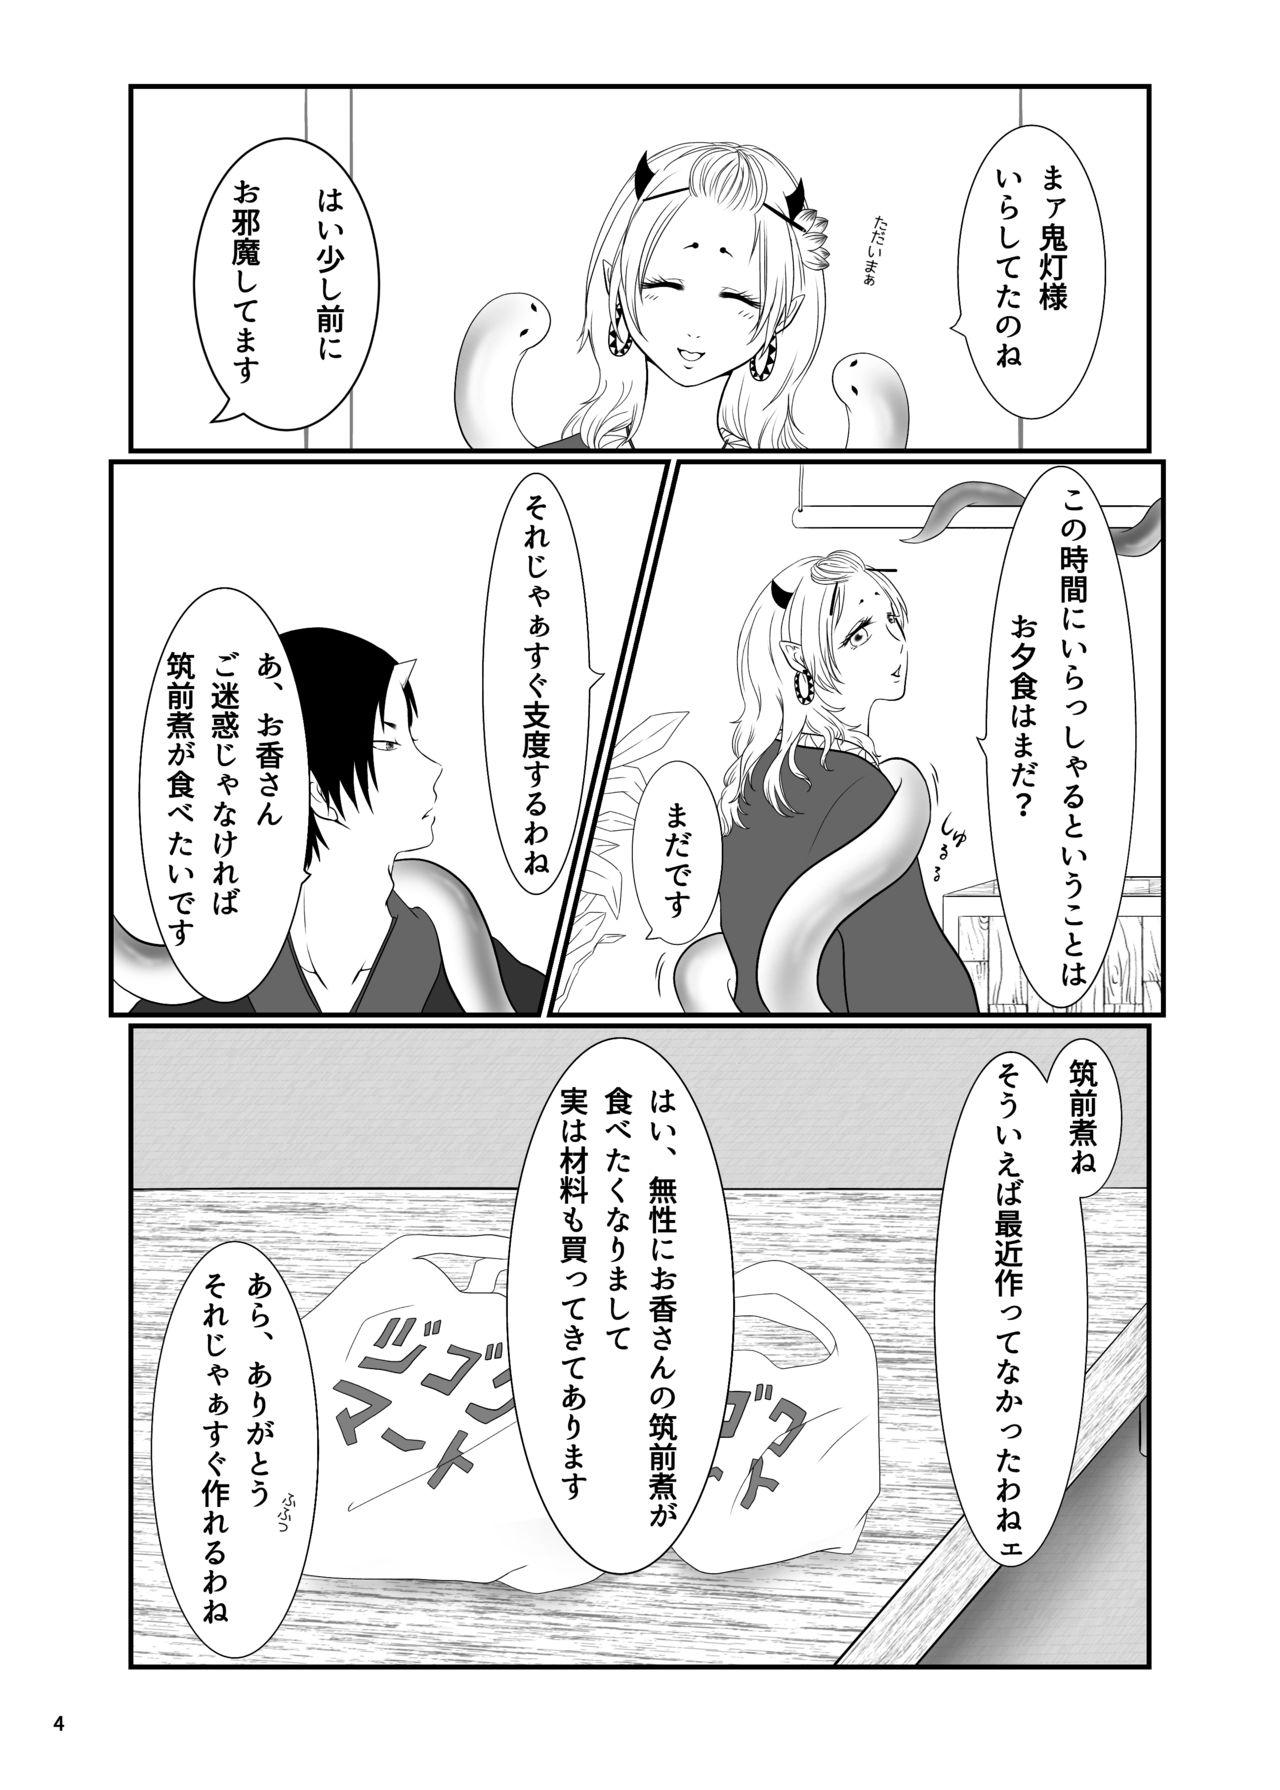 Spreading Touni Anata no Mono - Hoozuki no reitetsu Kiss - Page 3